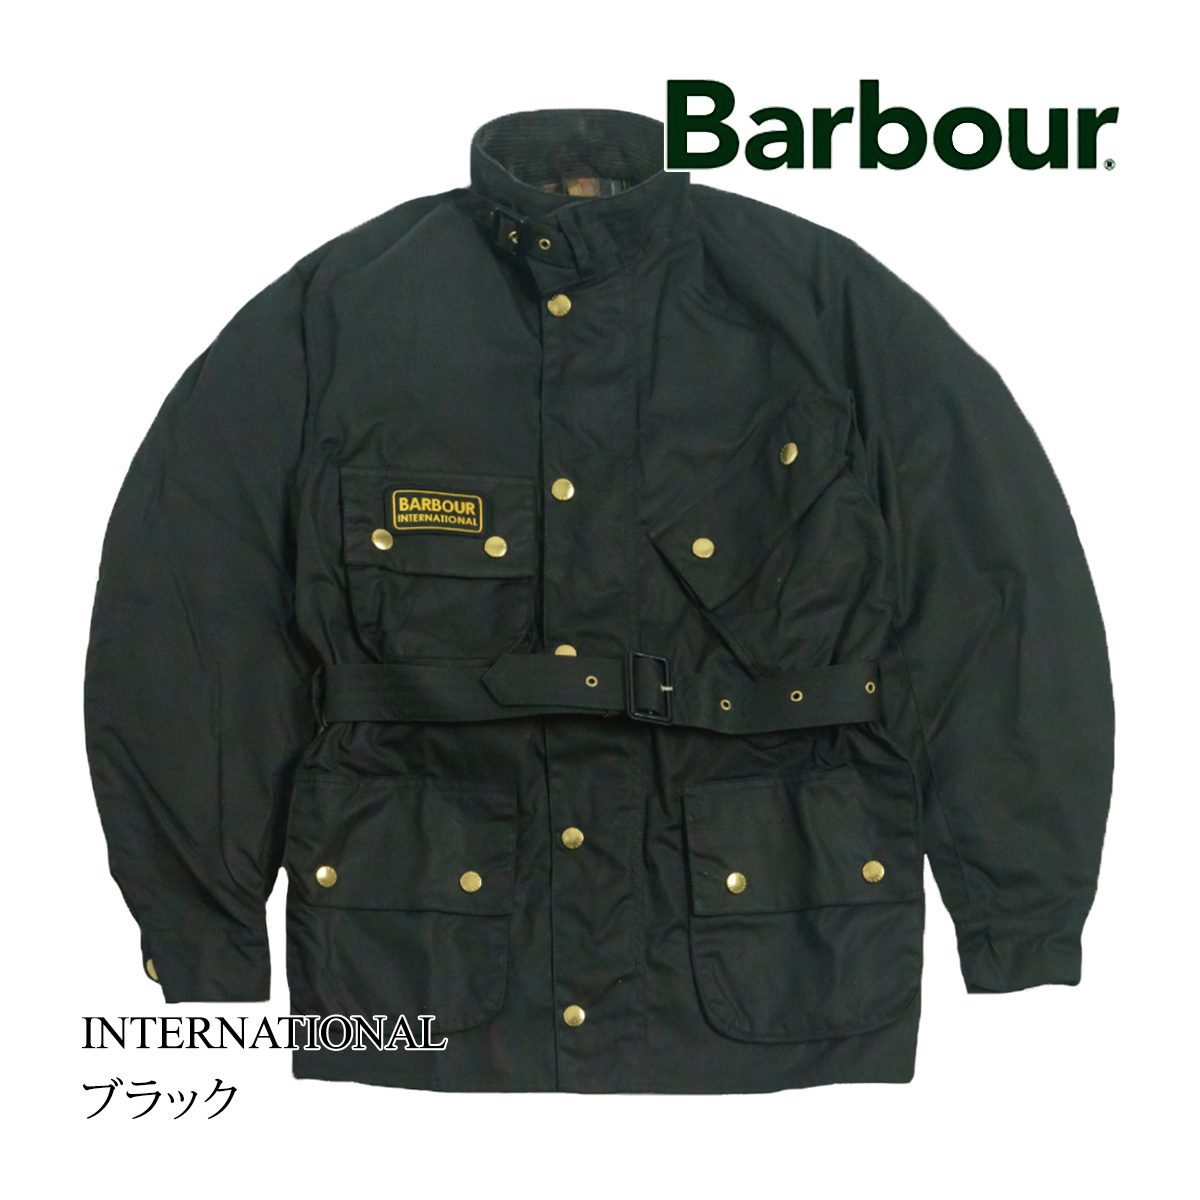 バブアー Barbour インターナショナルジャケット メンズ 34-44 モーターサイクルジャケット オイルドジャケット イギリス製 イングランド製  レギュラーモデル